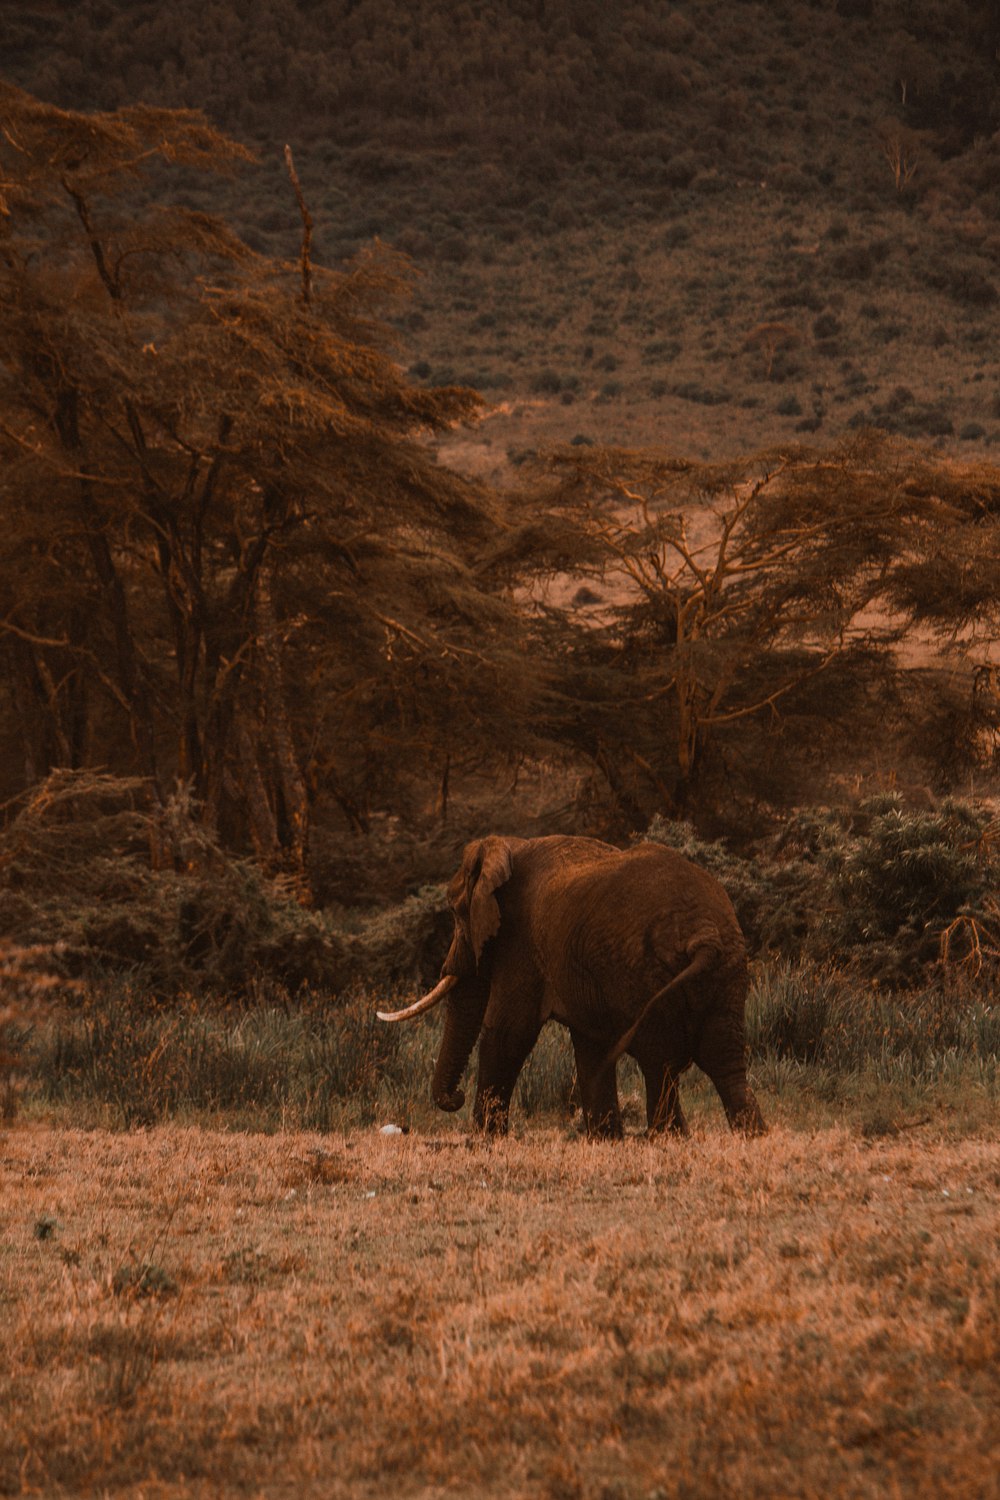 Un éléphant marchant dans un champ d’herbe sèche